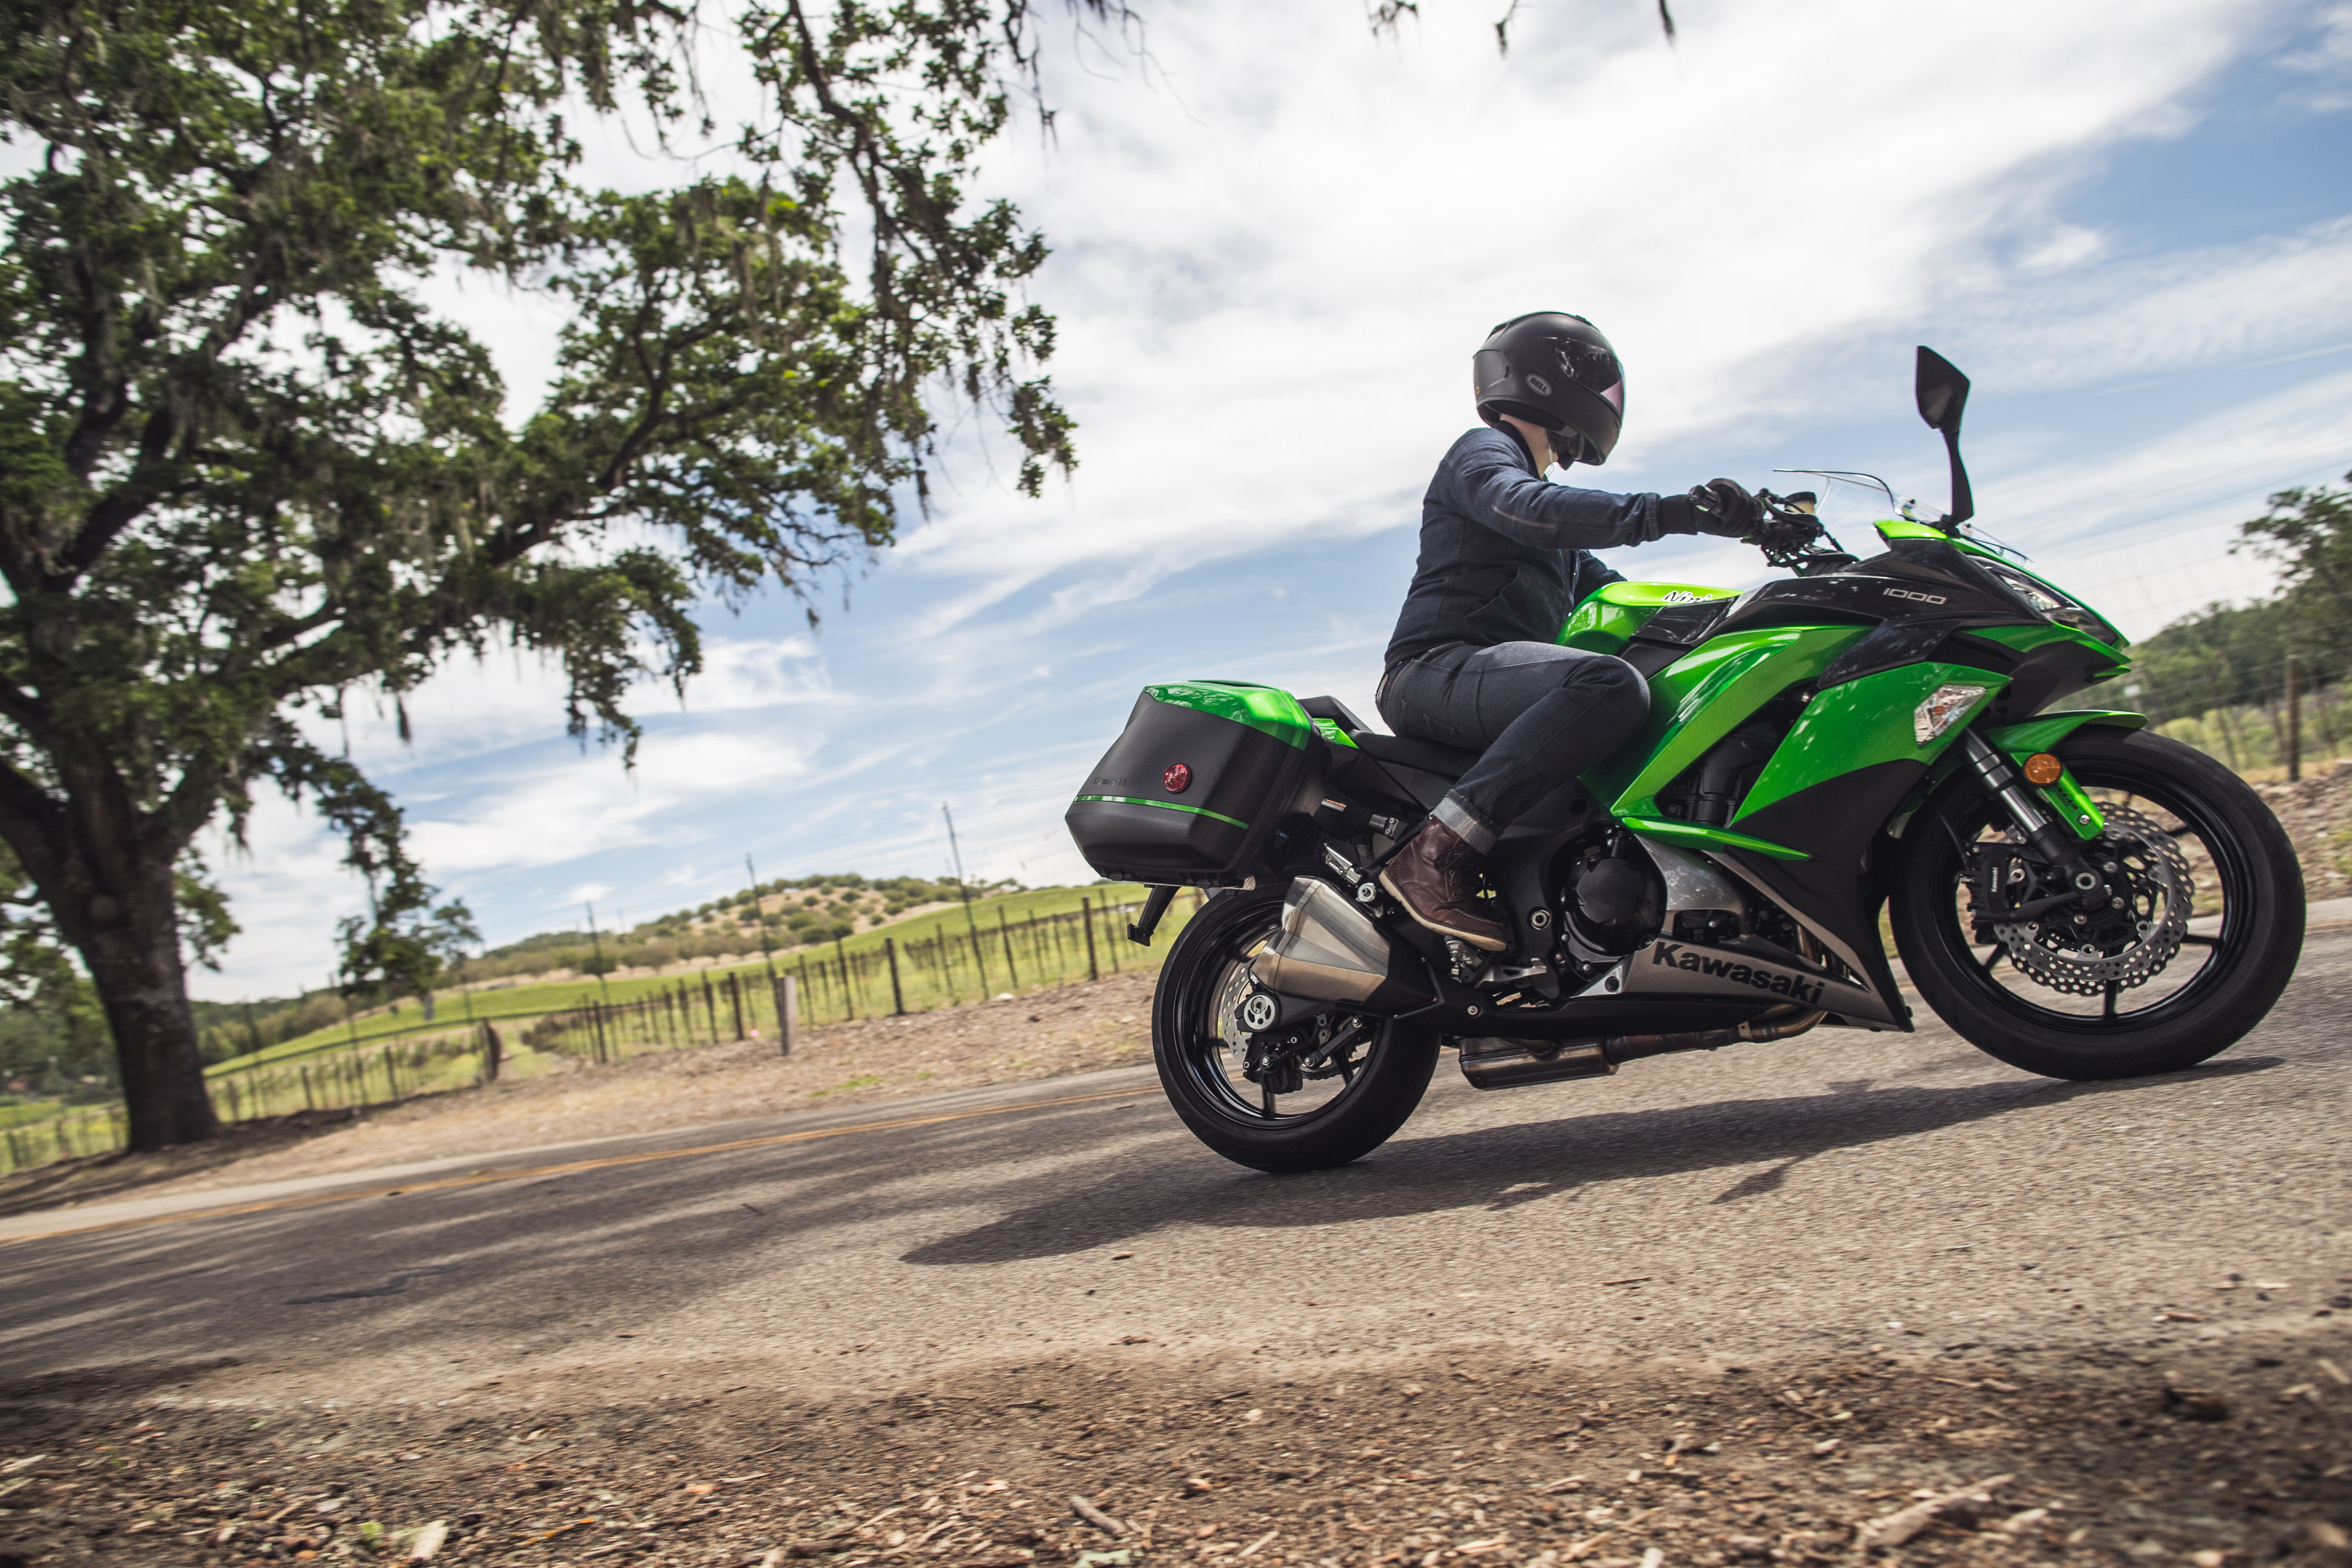 2017 Kawasaki Ninja 1000 ABS, First Ride Review